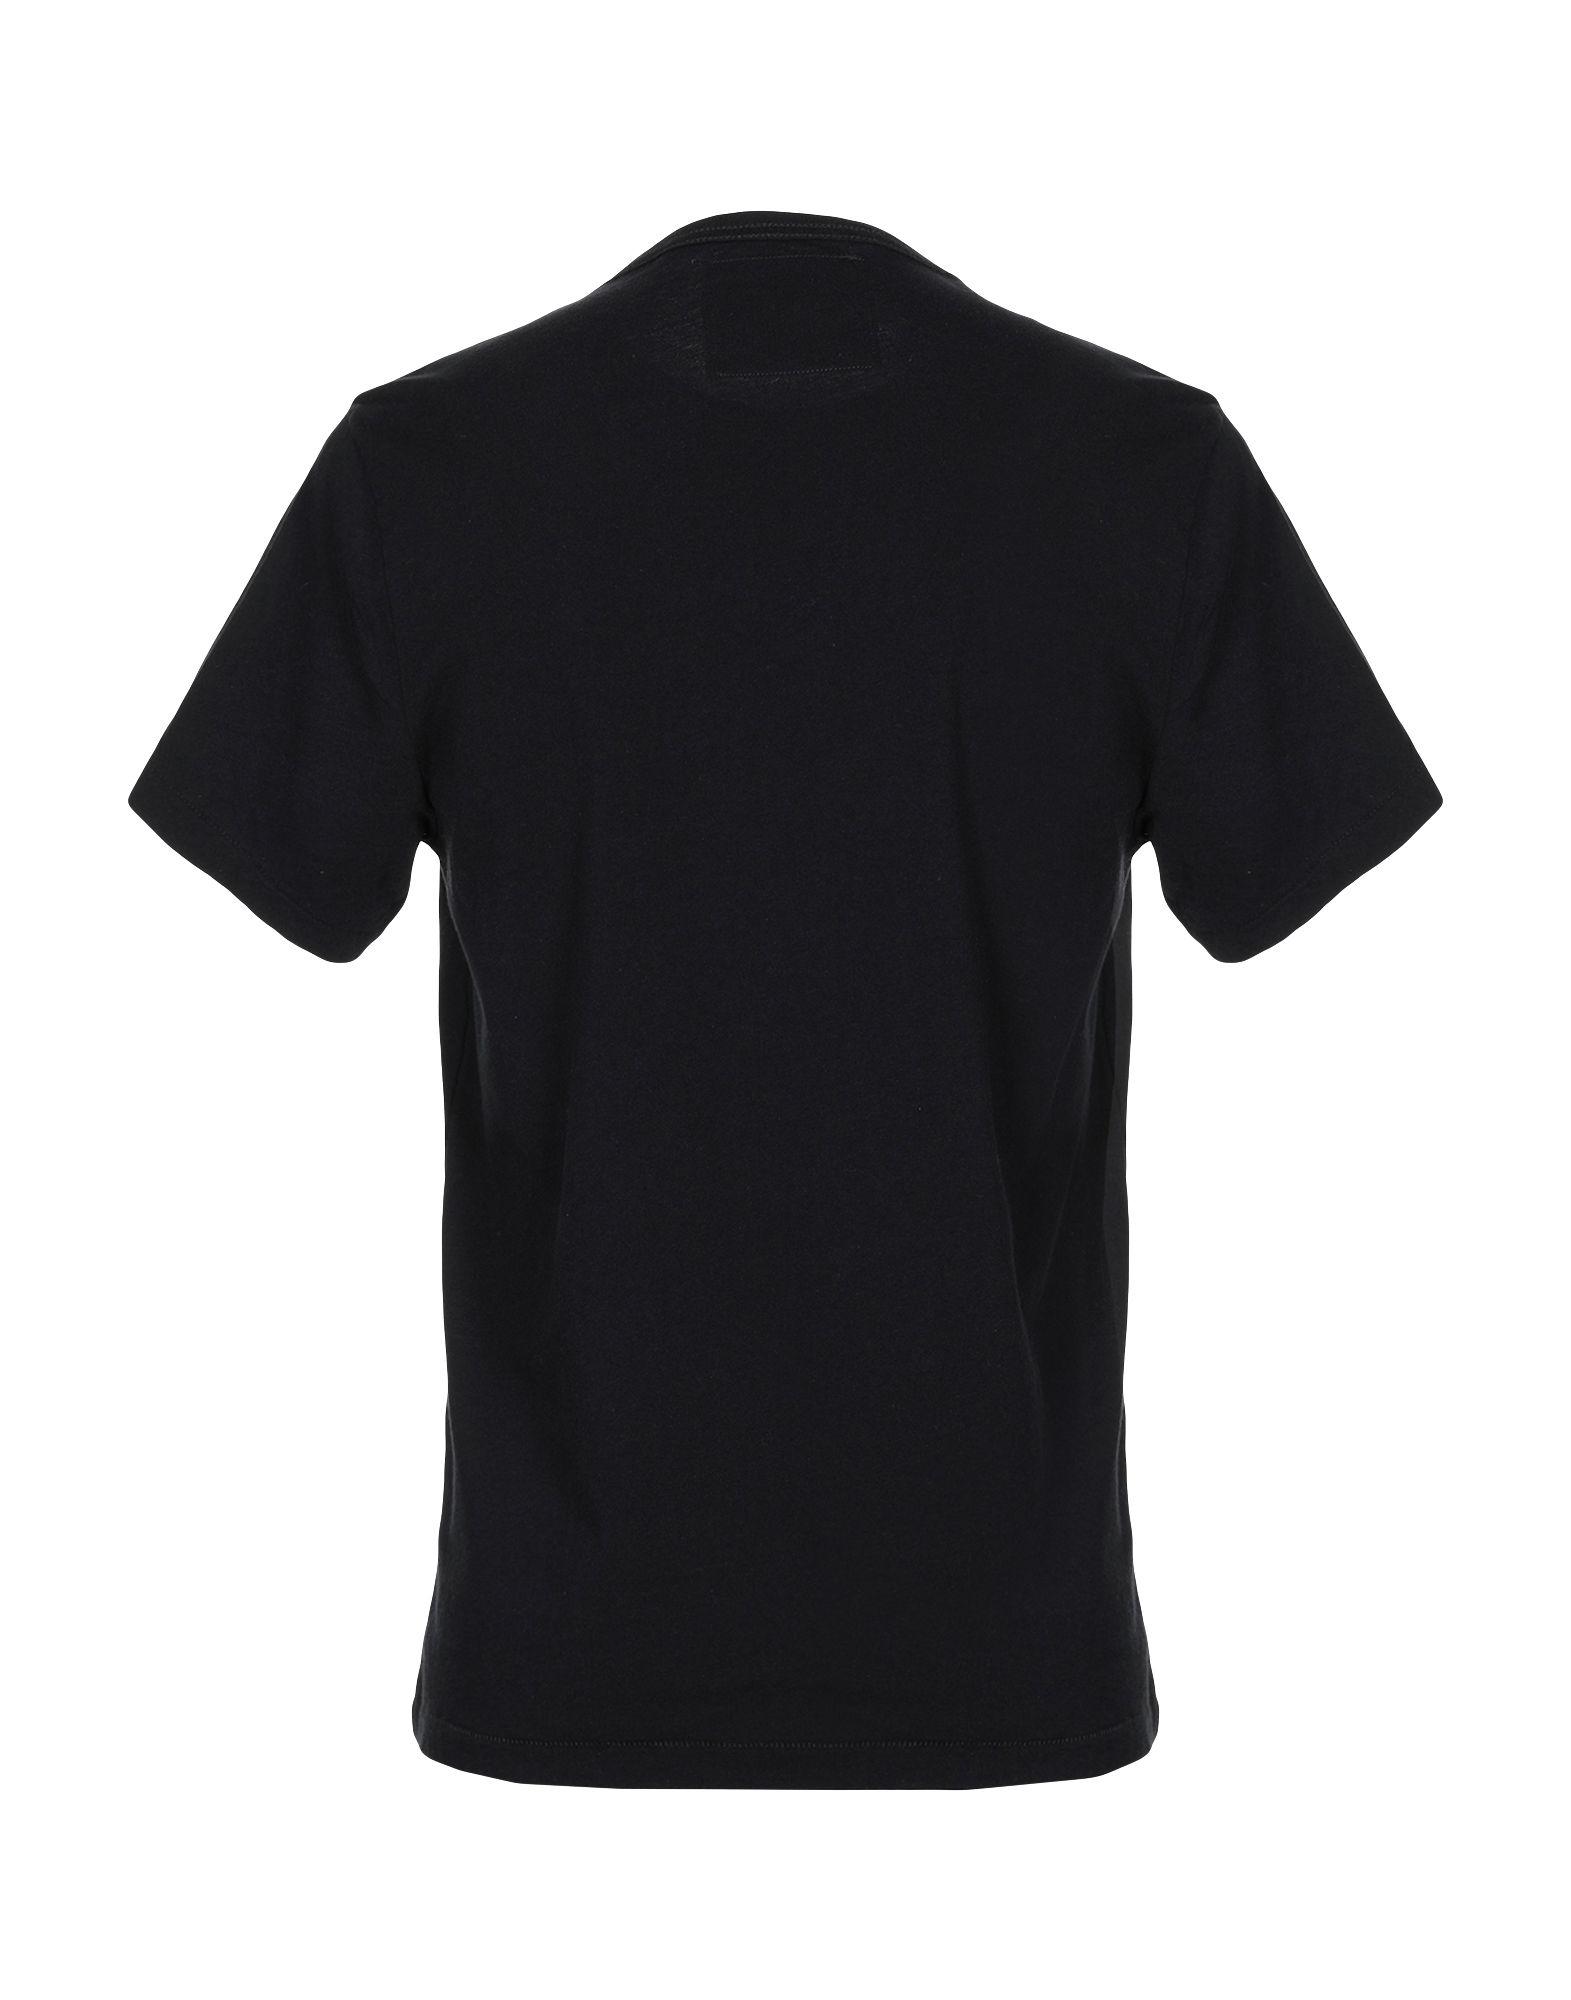 True Religion T-shirt in Black for Men - Lyst